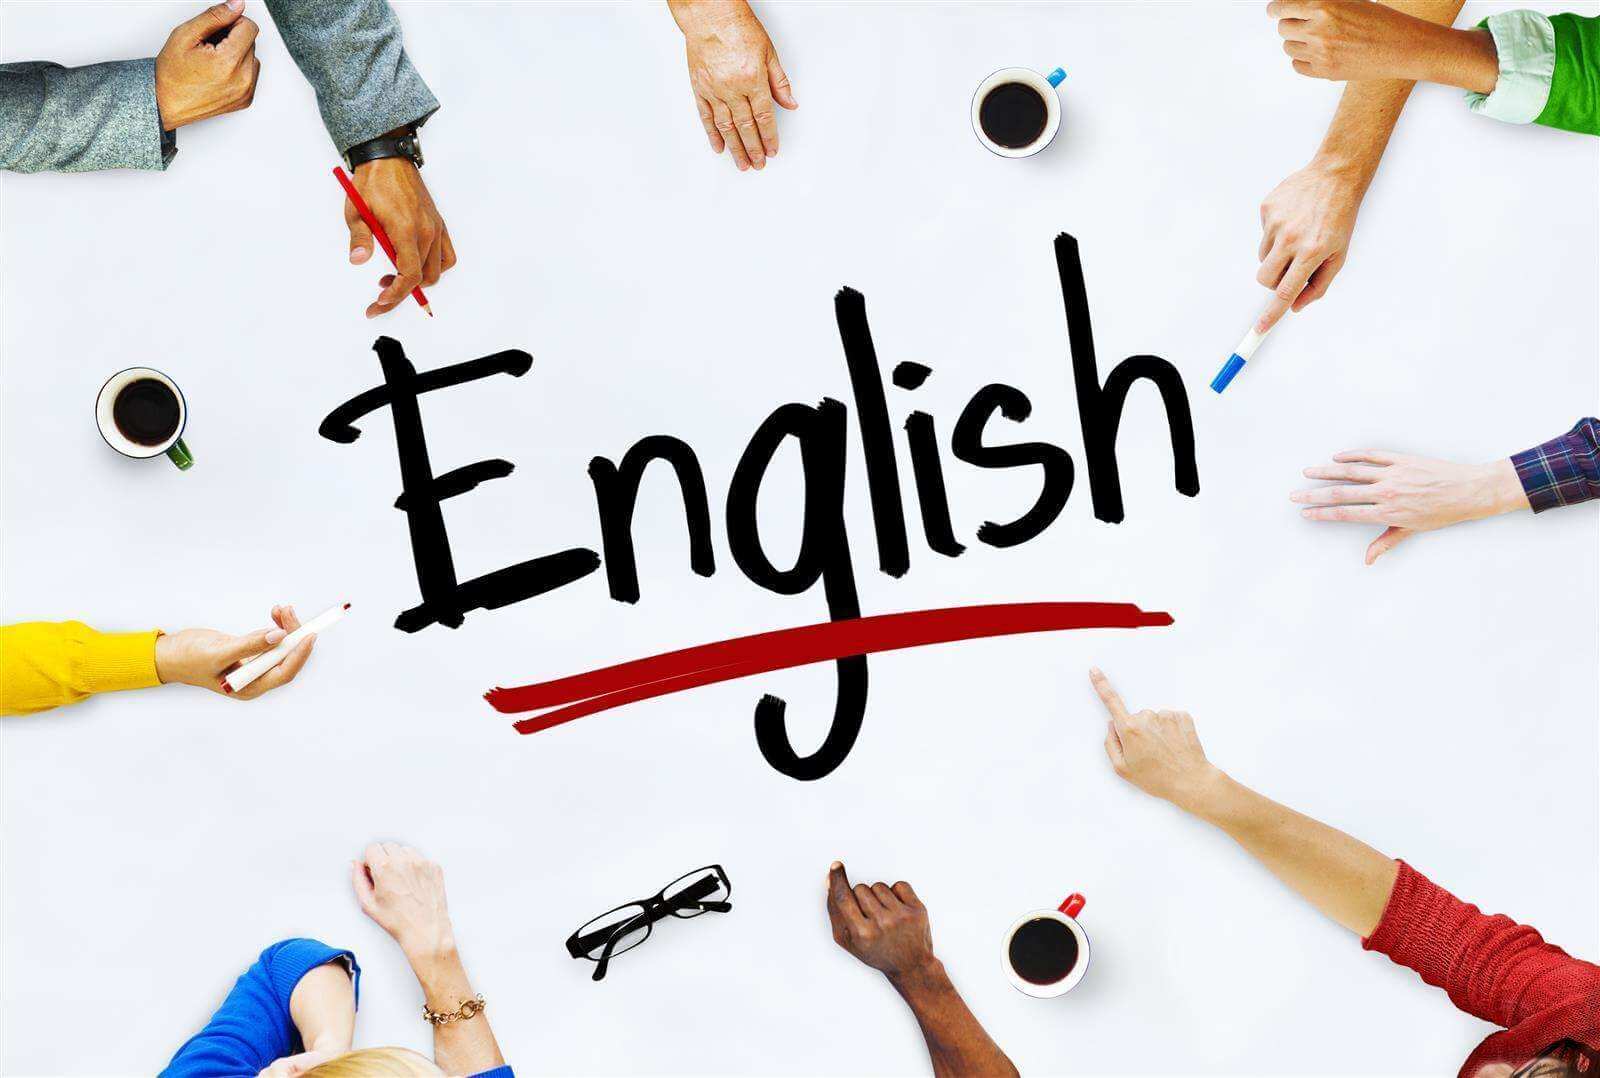 Kiat Belajar Bahasa Inggris Bagi Pemula